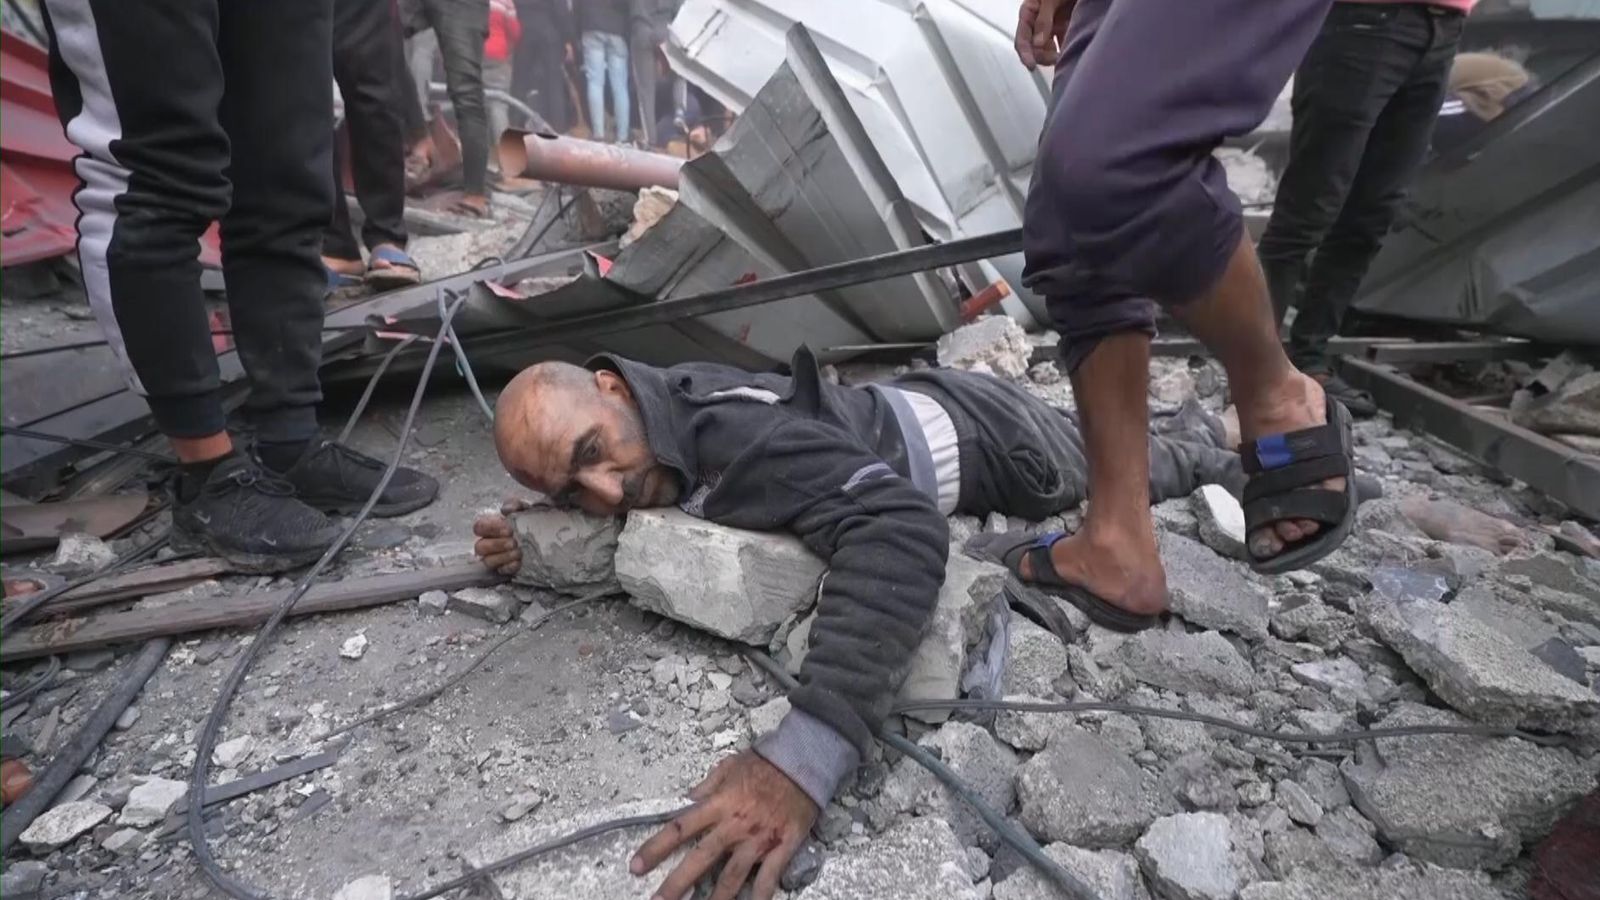 Sky News става свидетел на хаоса от удара на израелски дрон в Газа, докато мъртво дете е извадено от развалините